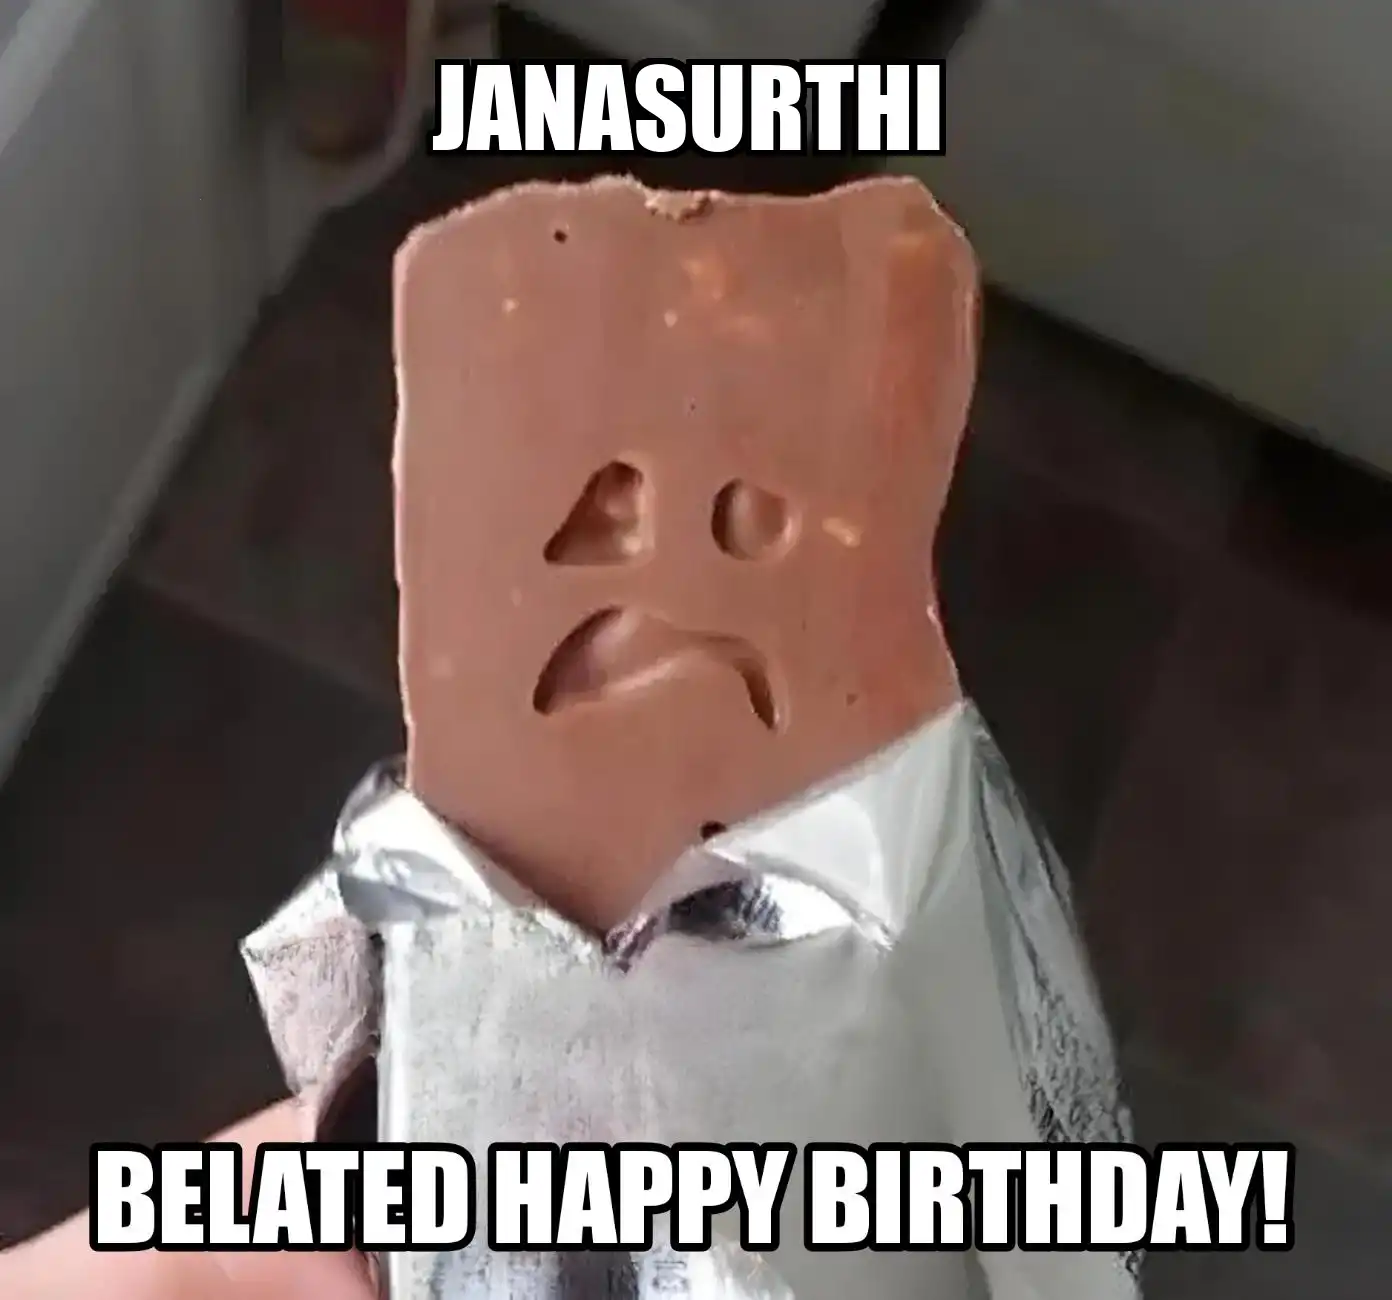 Happy Birthday Janasurthi Belated Happy Birthday Meme